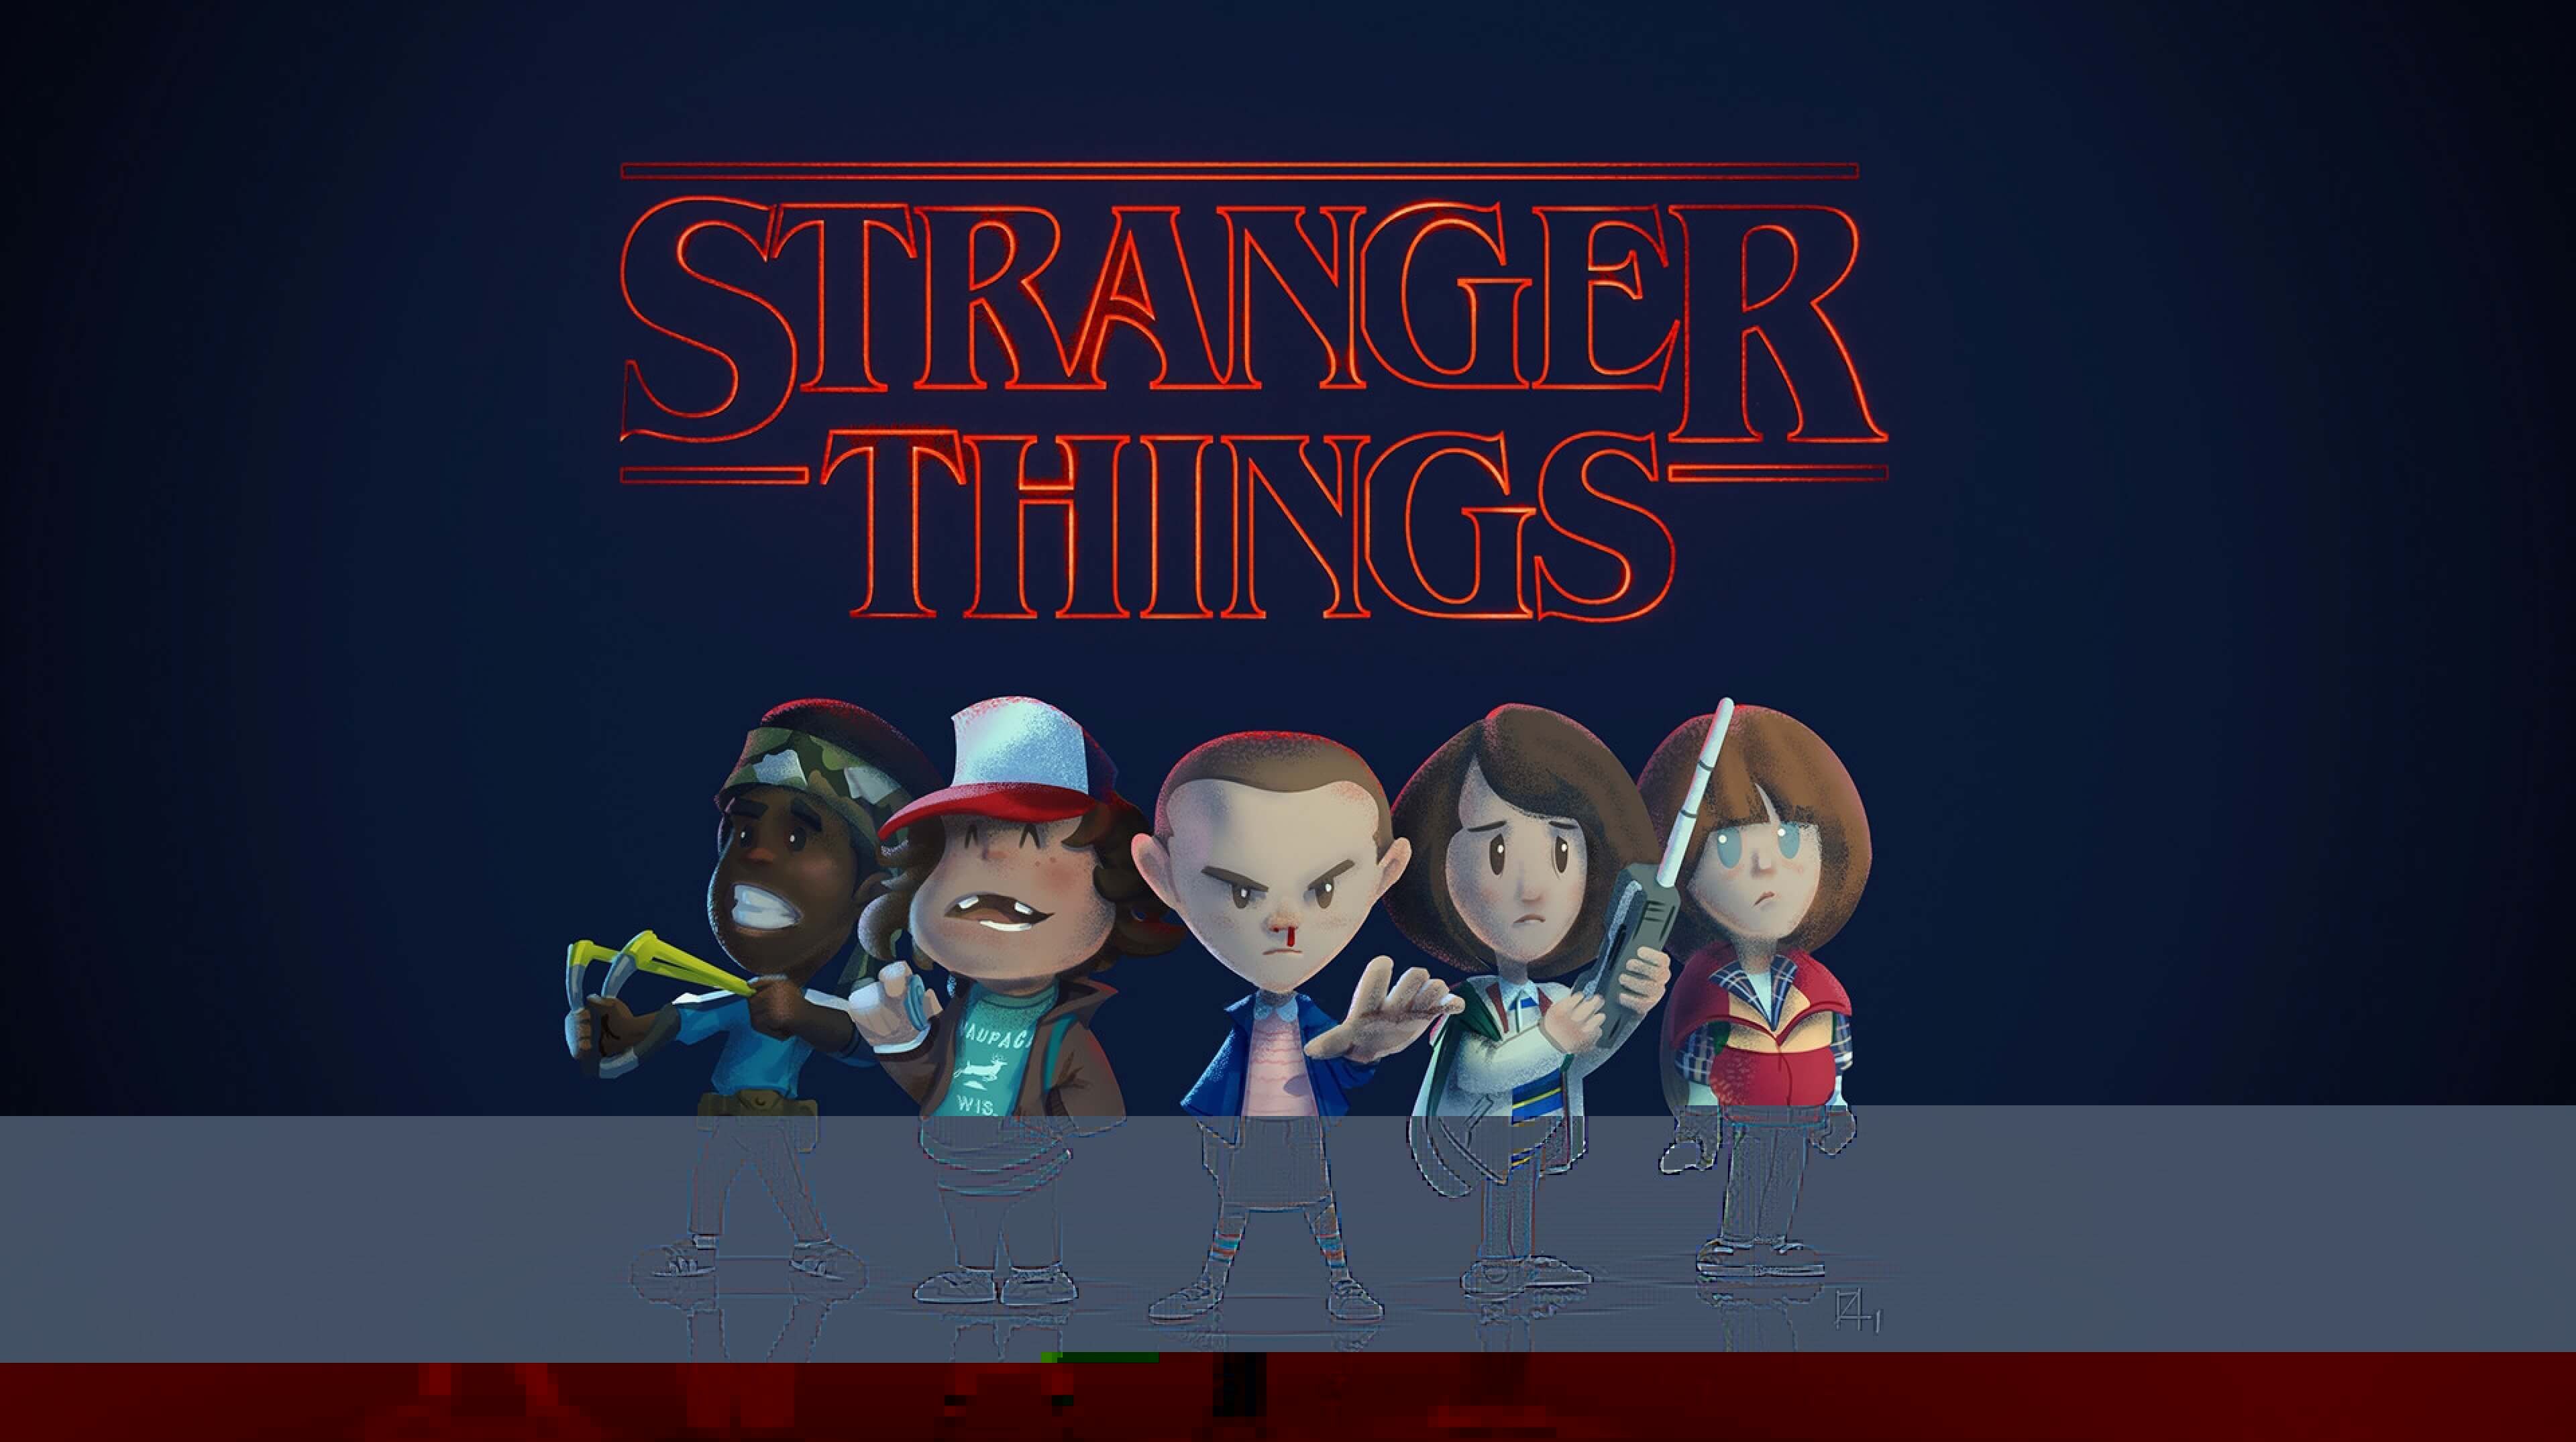 Free Stranger Things Wallpaper for Android 4K HD. Stranger things wallpaper, Stranger things fanart, Stranger things art